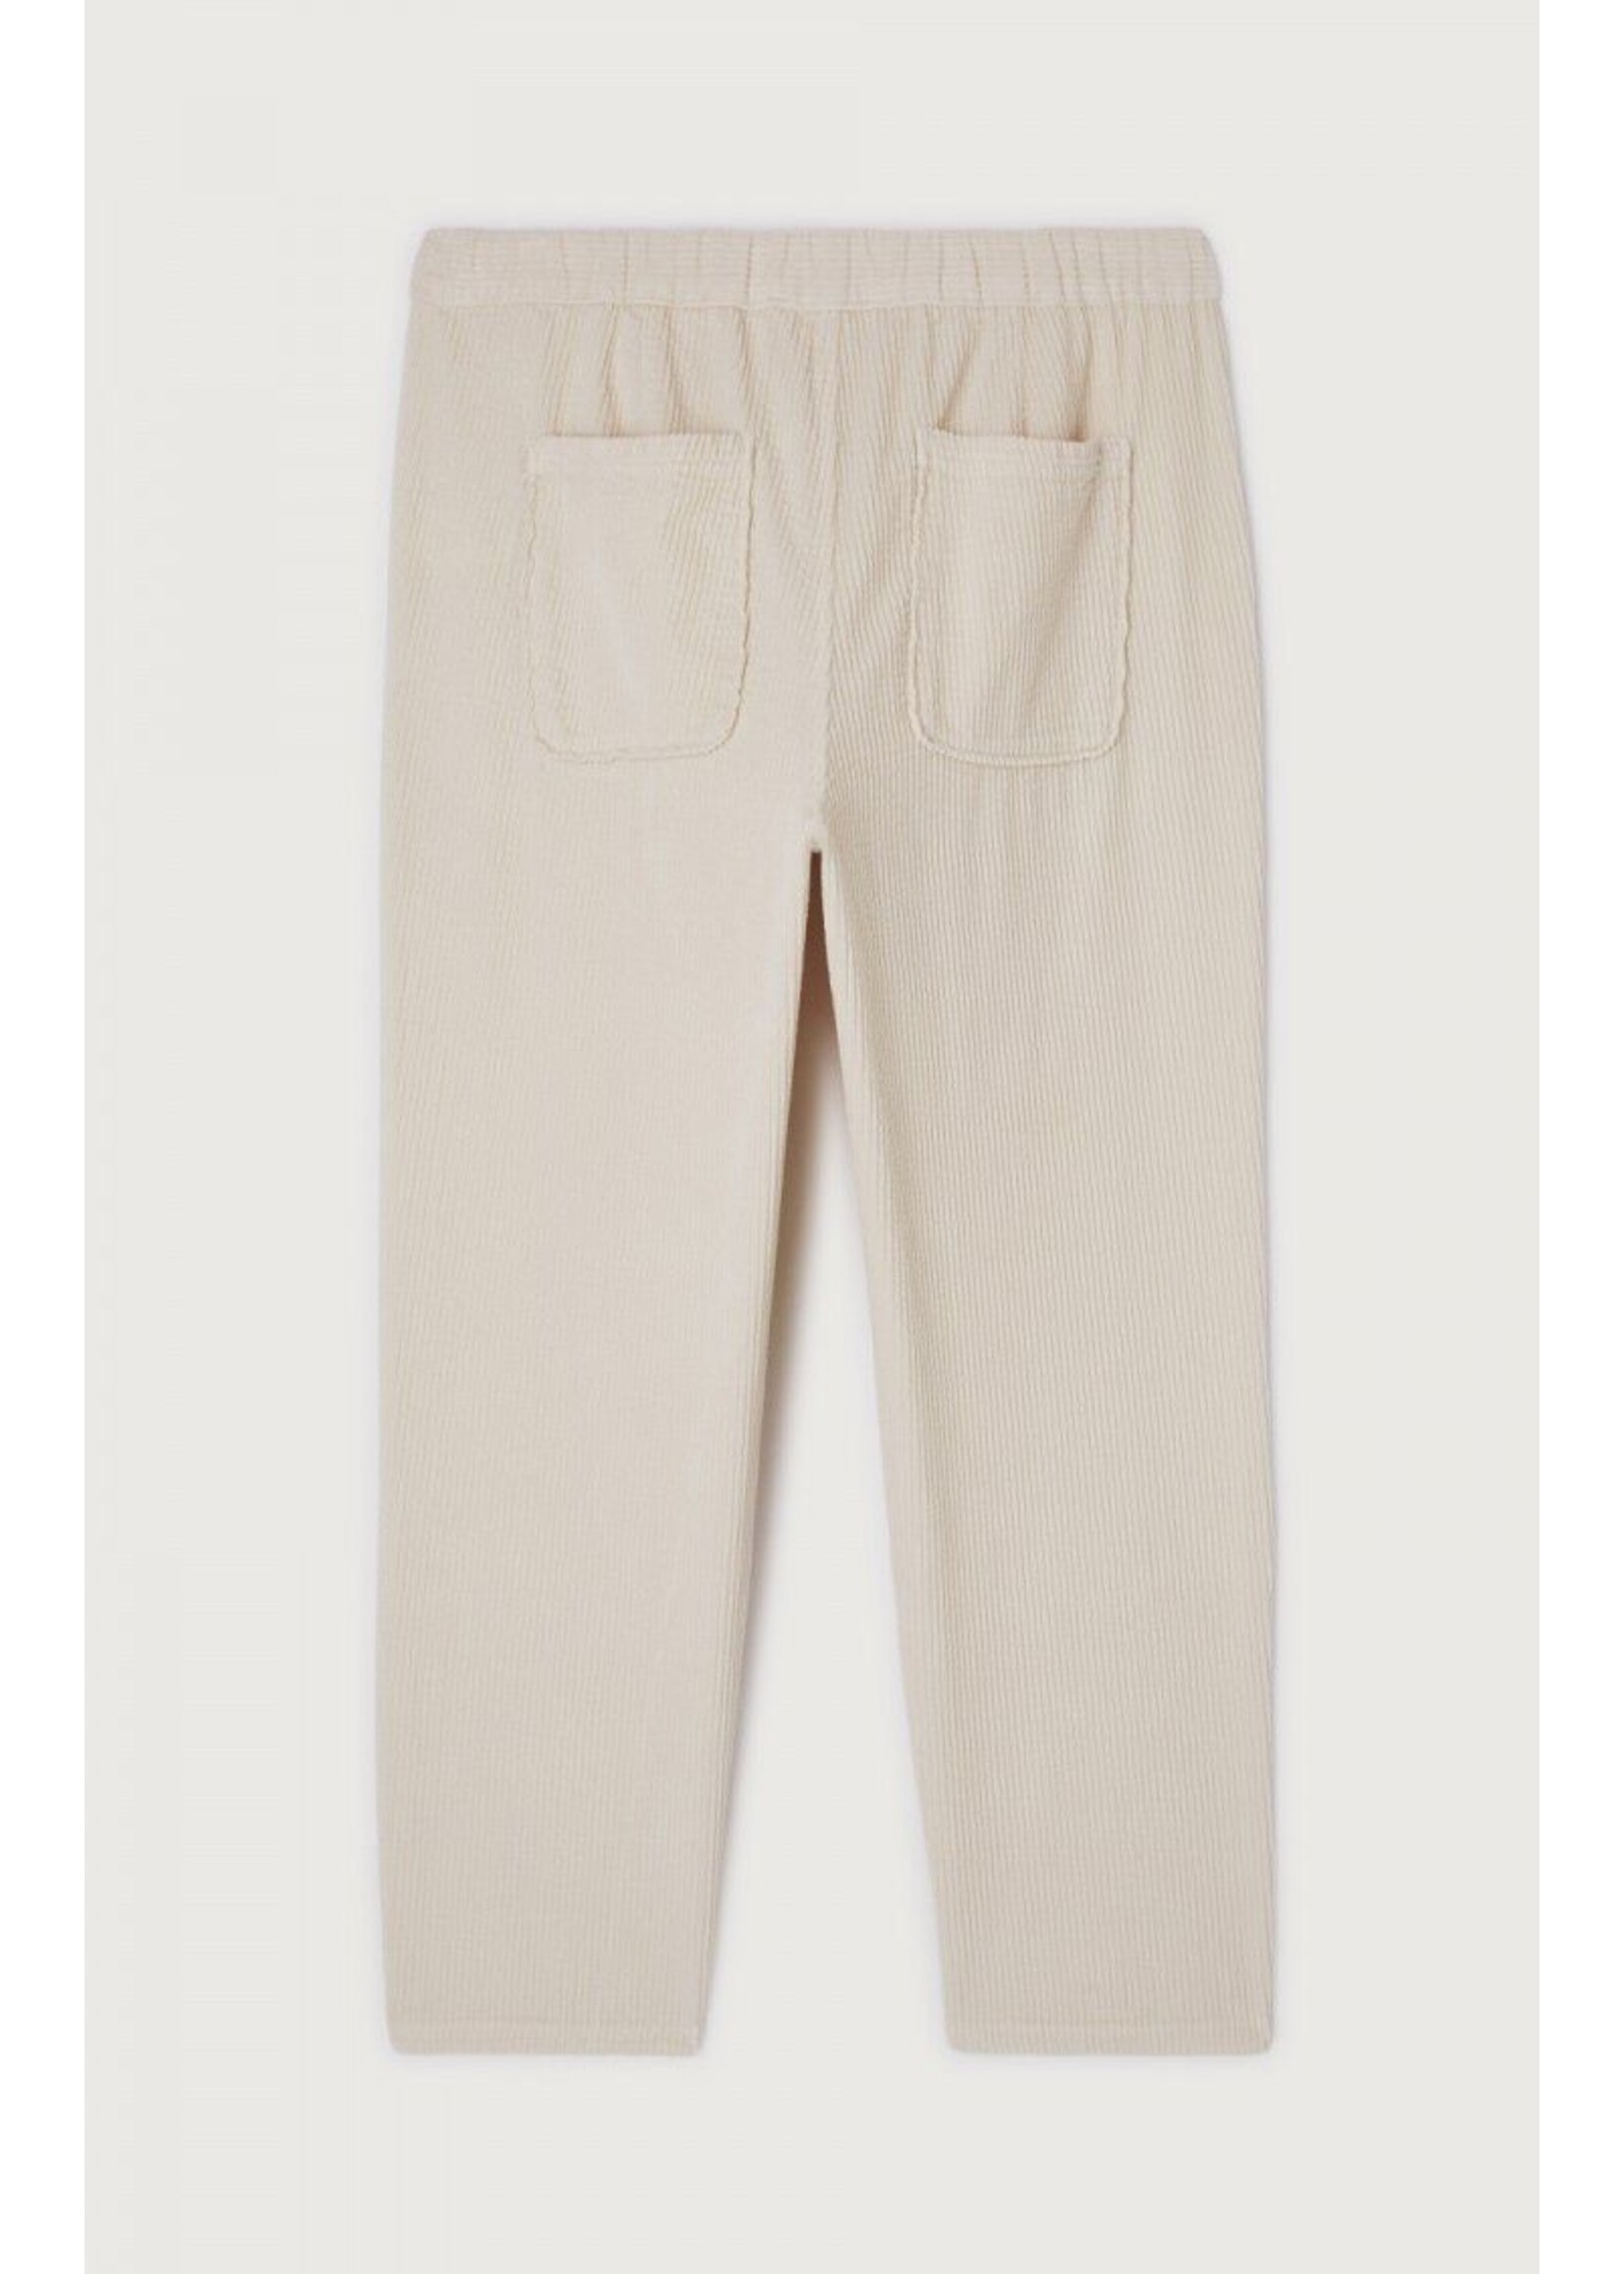 American Vintage Padow Pants